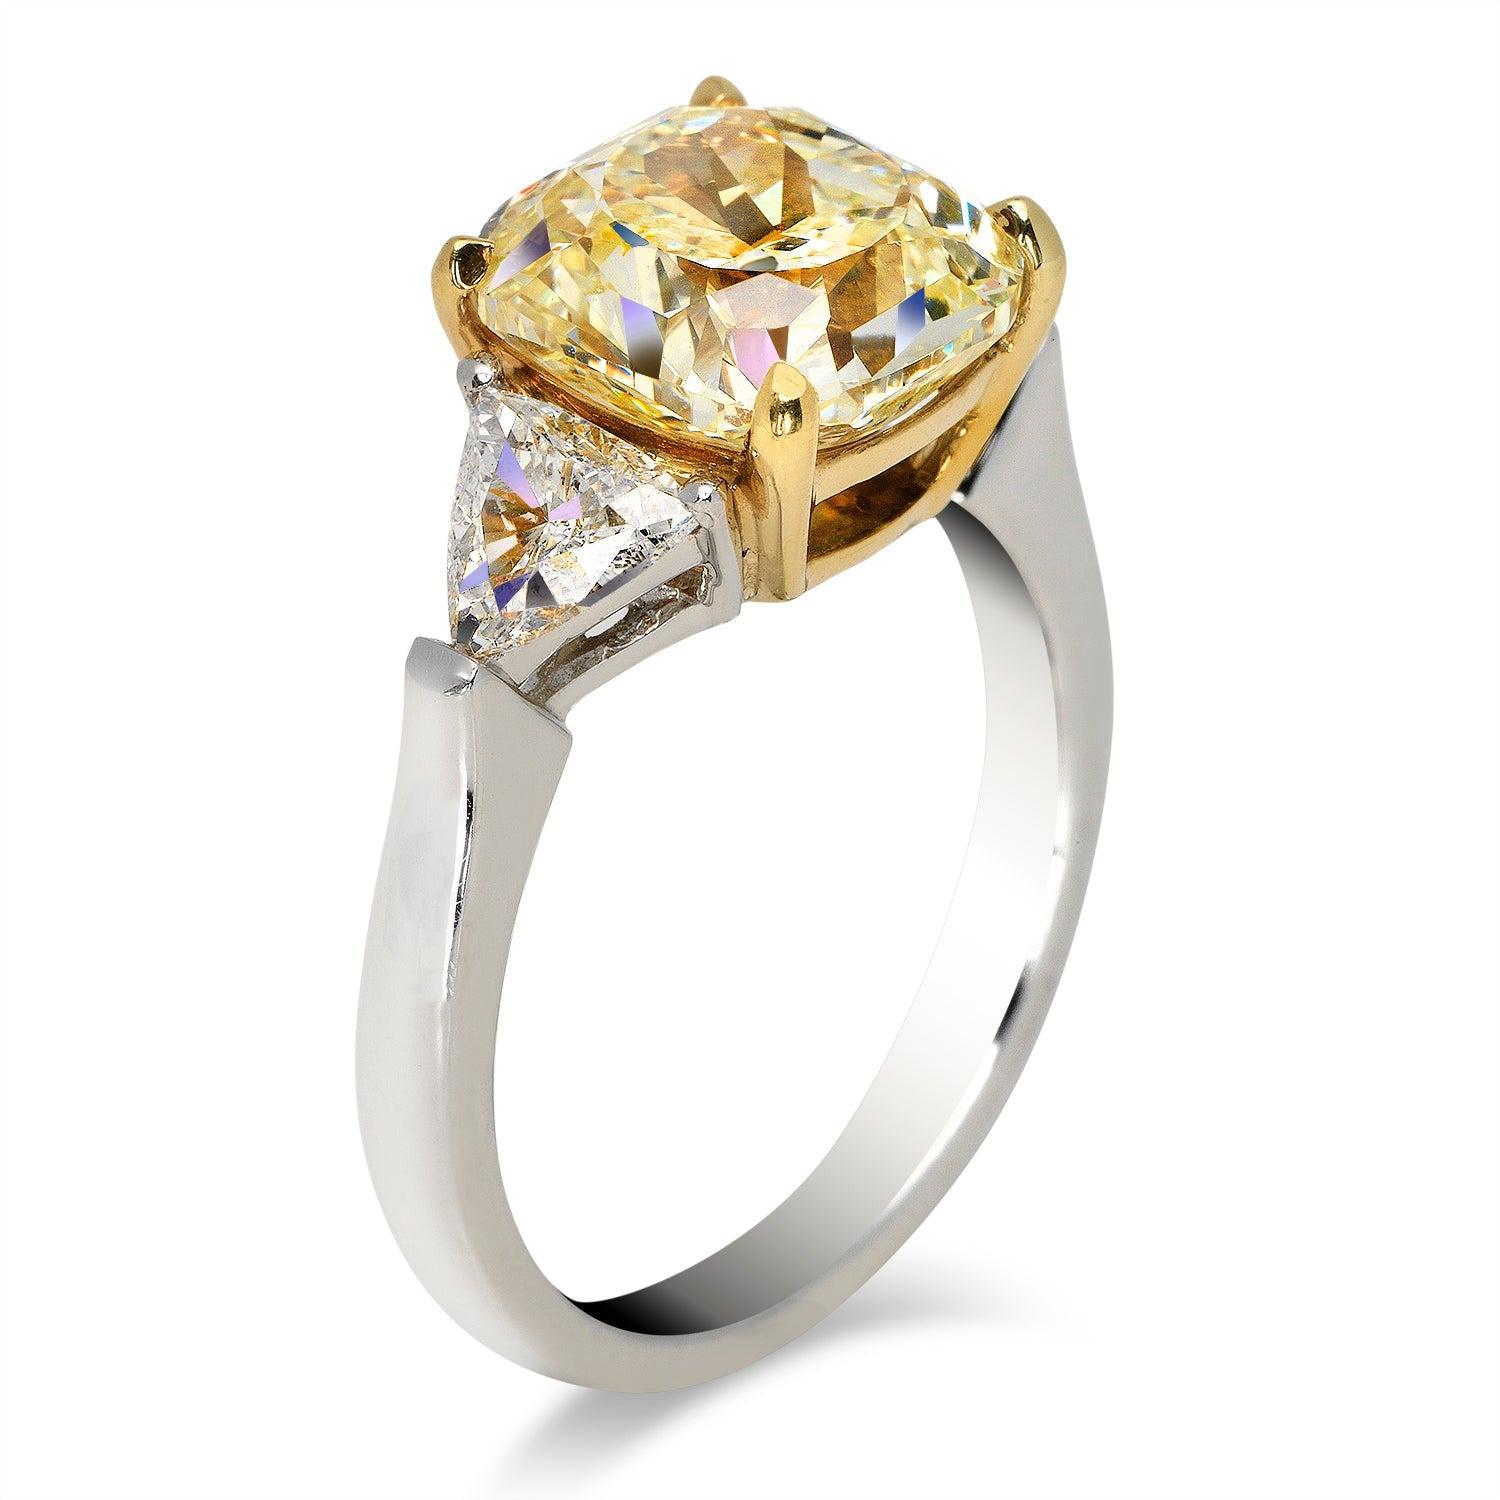 5 carat engagement ring